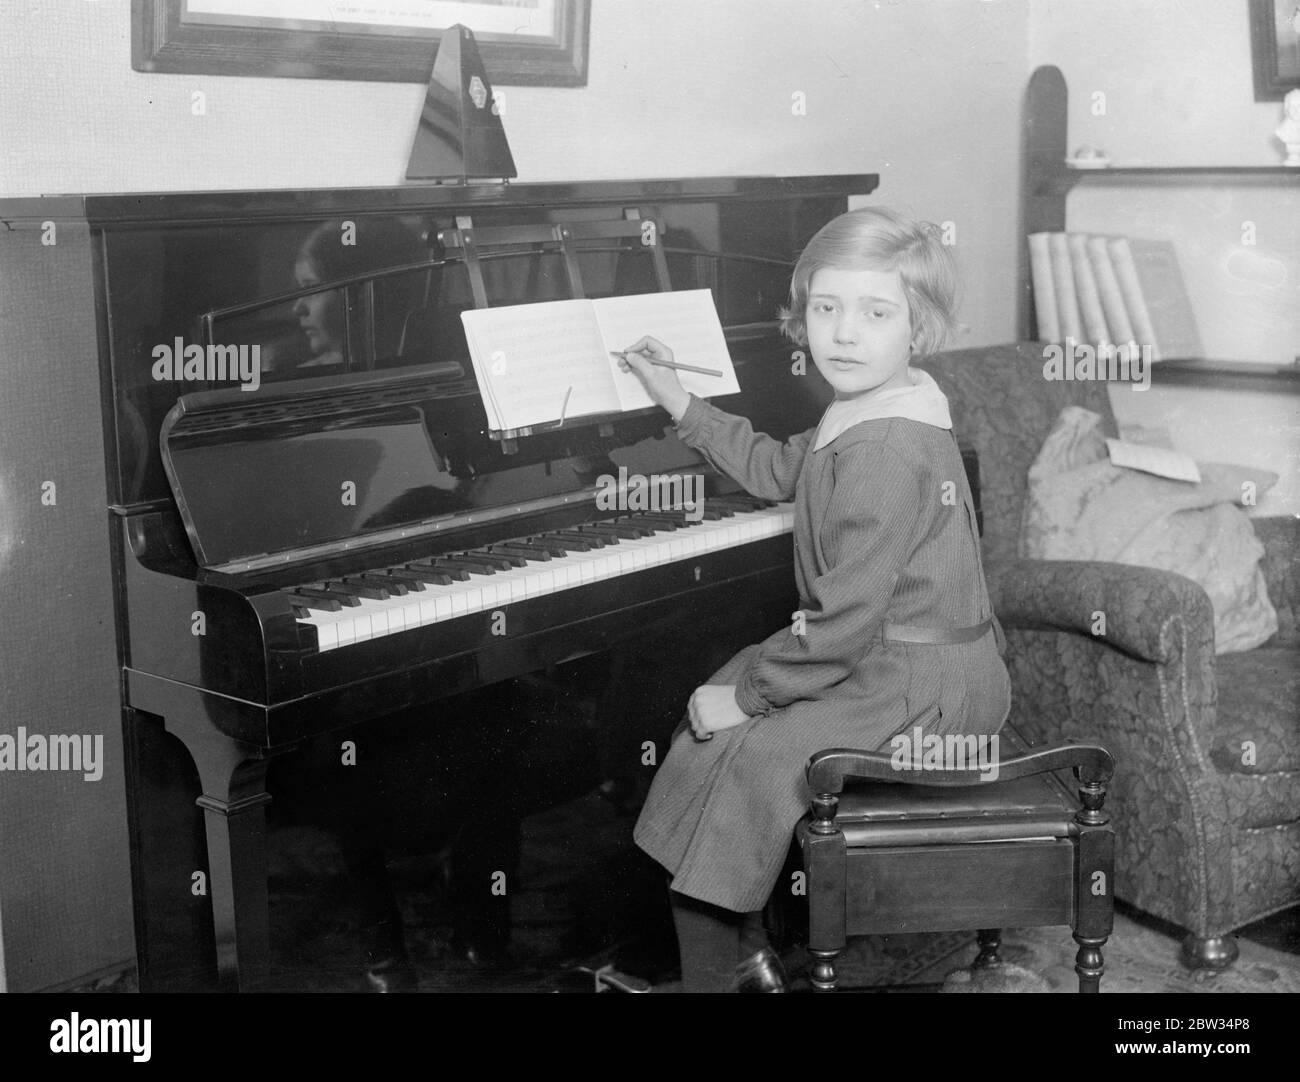 Acht Jahre alte Musik Wunderkind . So markiert ist das musikalische Talent eines achtjährigen Londoner Schulmädchen, Sheila Mossman, von Greenwich, London, ist, dass das LCC Education Committee schlägt vor, ihr ein besonderes Stipendium zu vergeben. Sheila hat ein ungewöhnliches Geschenk zum Komponieren und wenn nur sechs Jahre alt komponierte zwei Studien. Seitdem hat sie sechs weitere Kompositionen zu ihrem Kredit. Sie ist eine brillante Pianistin und spielte im Alter von drei Jahren Beethoven 's Minuet in G. Sie begann Musik zu lernen, als sie 6 Jahre alt war. Sie wurde von Dr. P für ein Stipendium am Royal College of Music ausgewählt Stockfoto